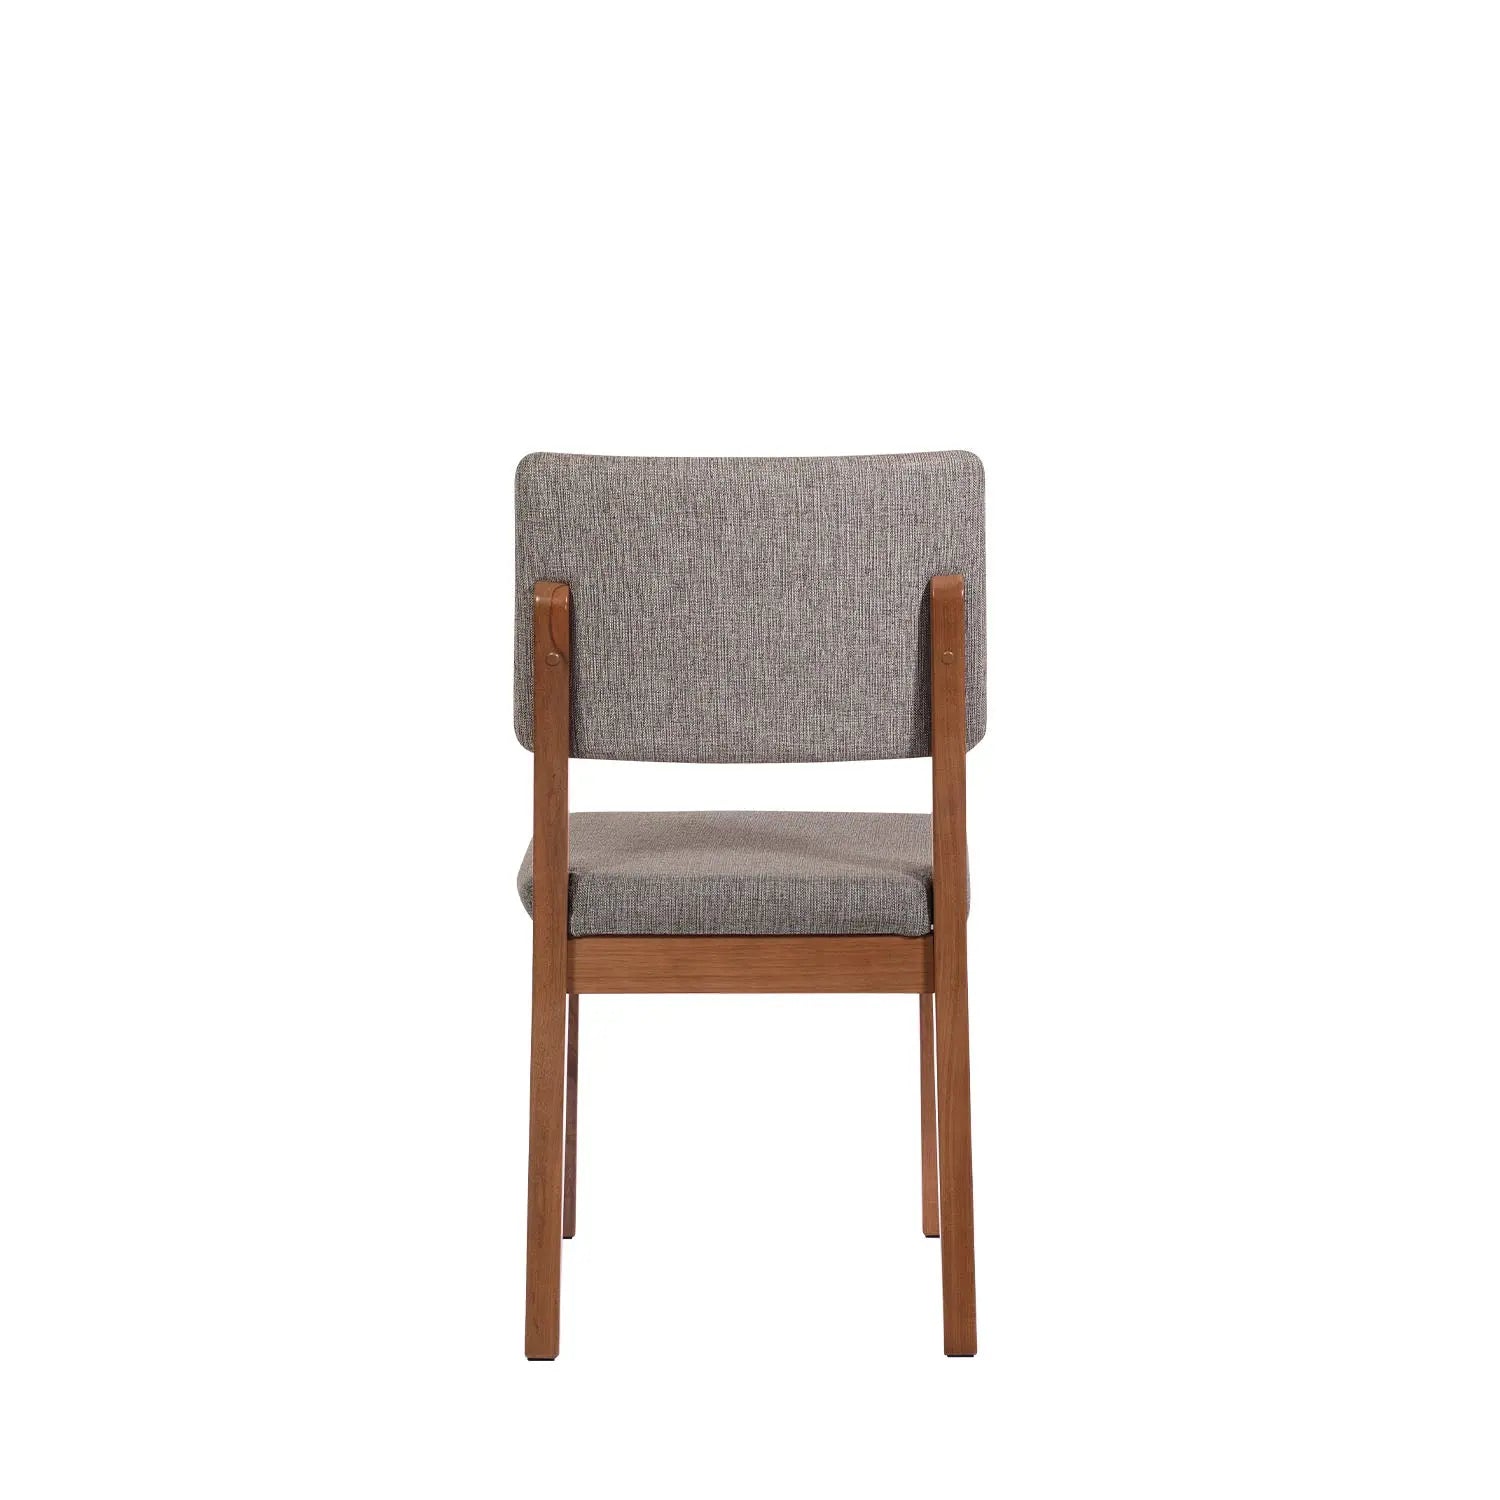 Homedock Conjunto de Jantar Mesa Extensível Molise 4 Cadeiras Ella - Natural c/ Mescla Cinza Móveis Província